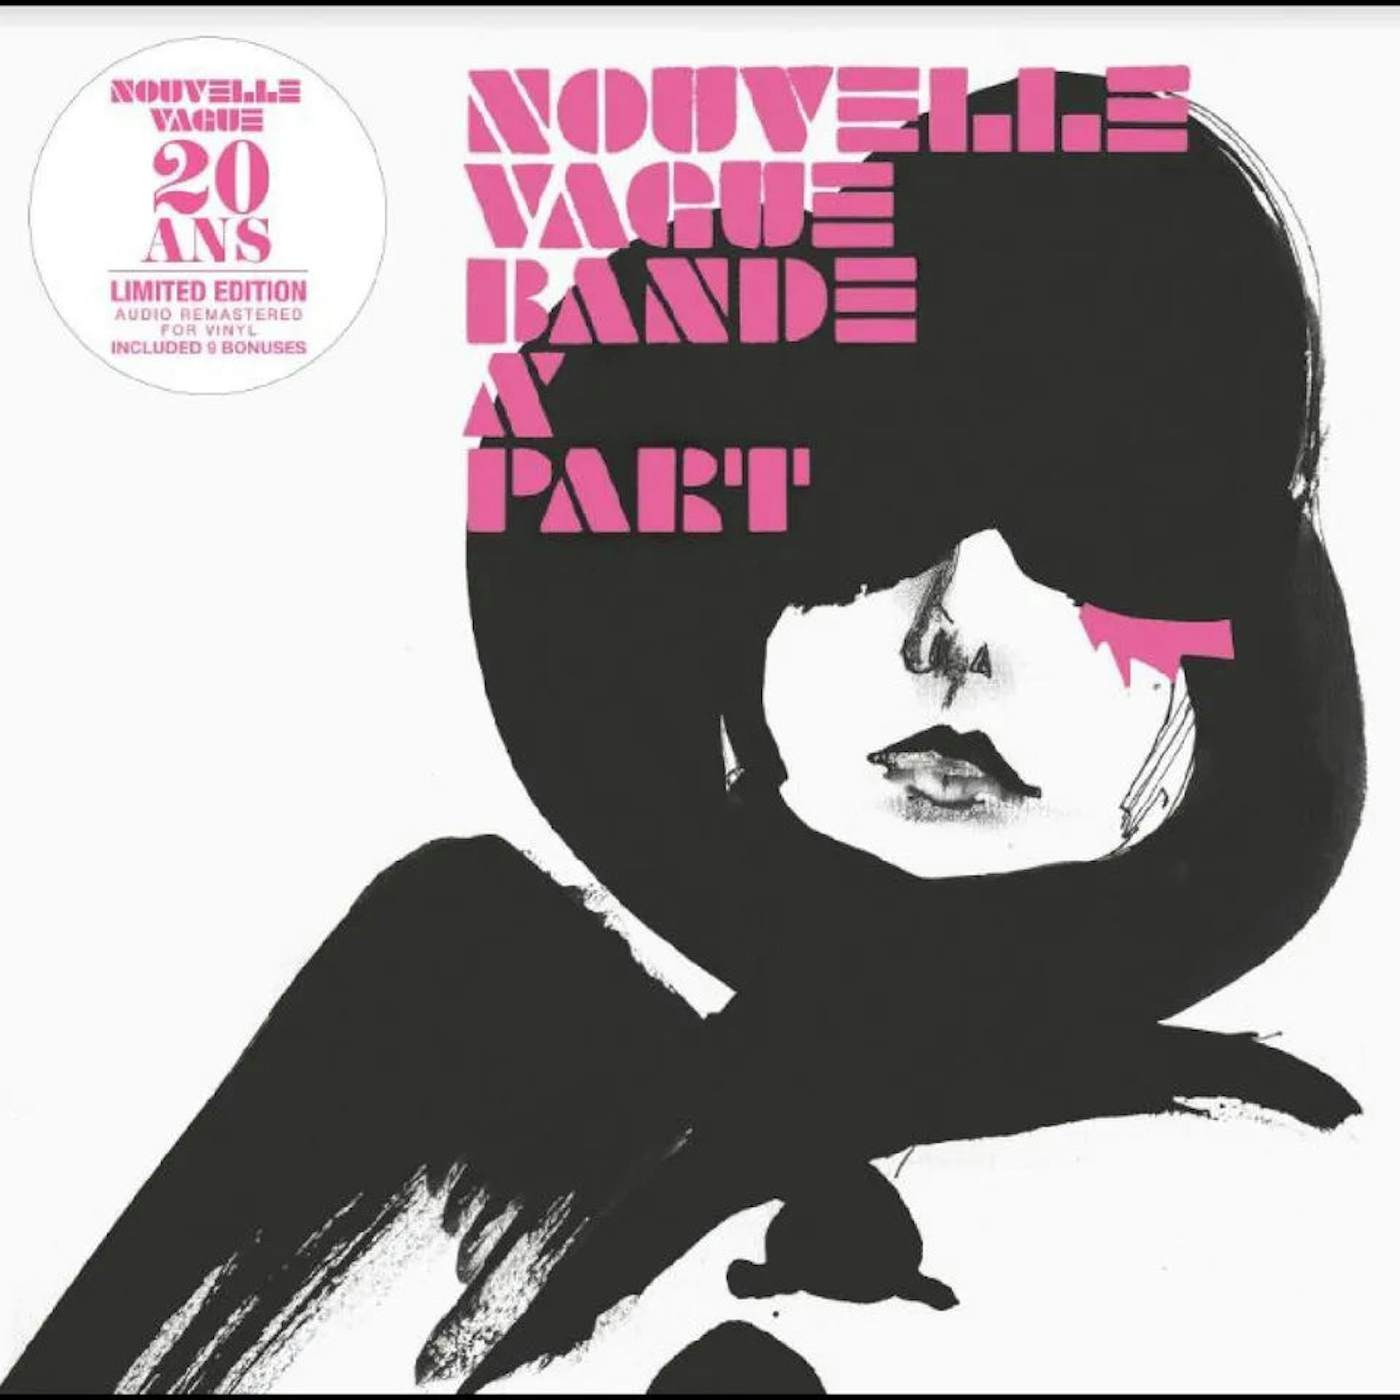 Nouvelle Vague - Bande a Part (20th anniversary)